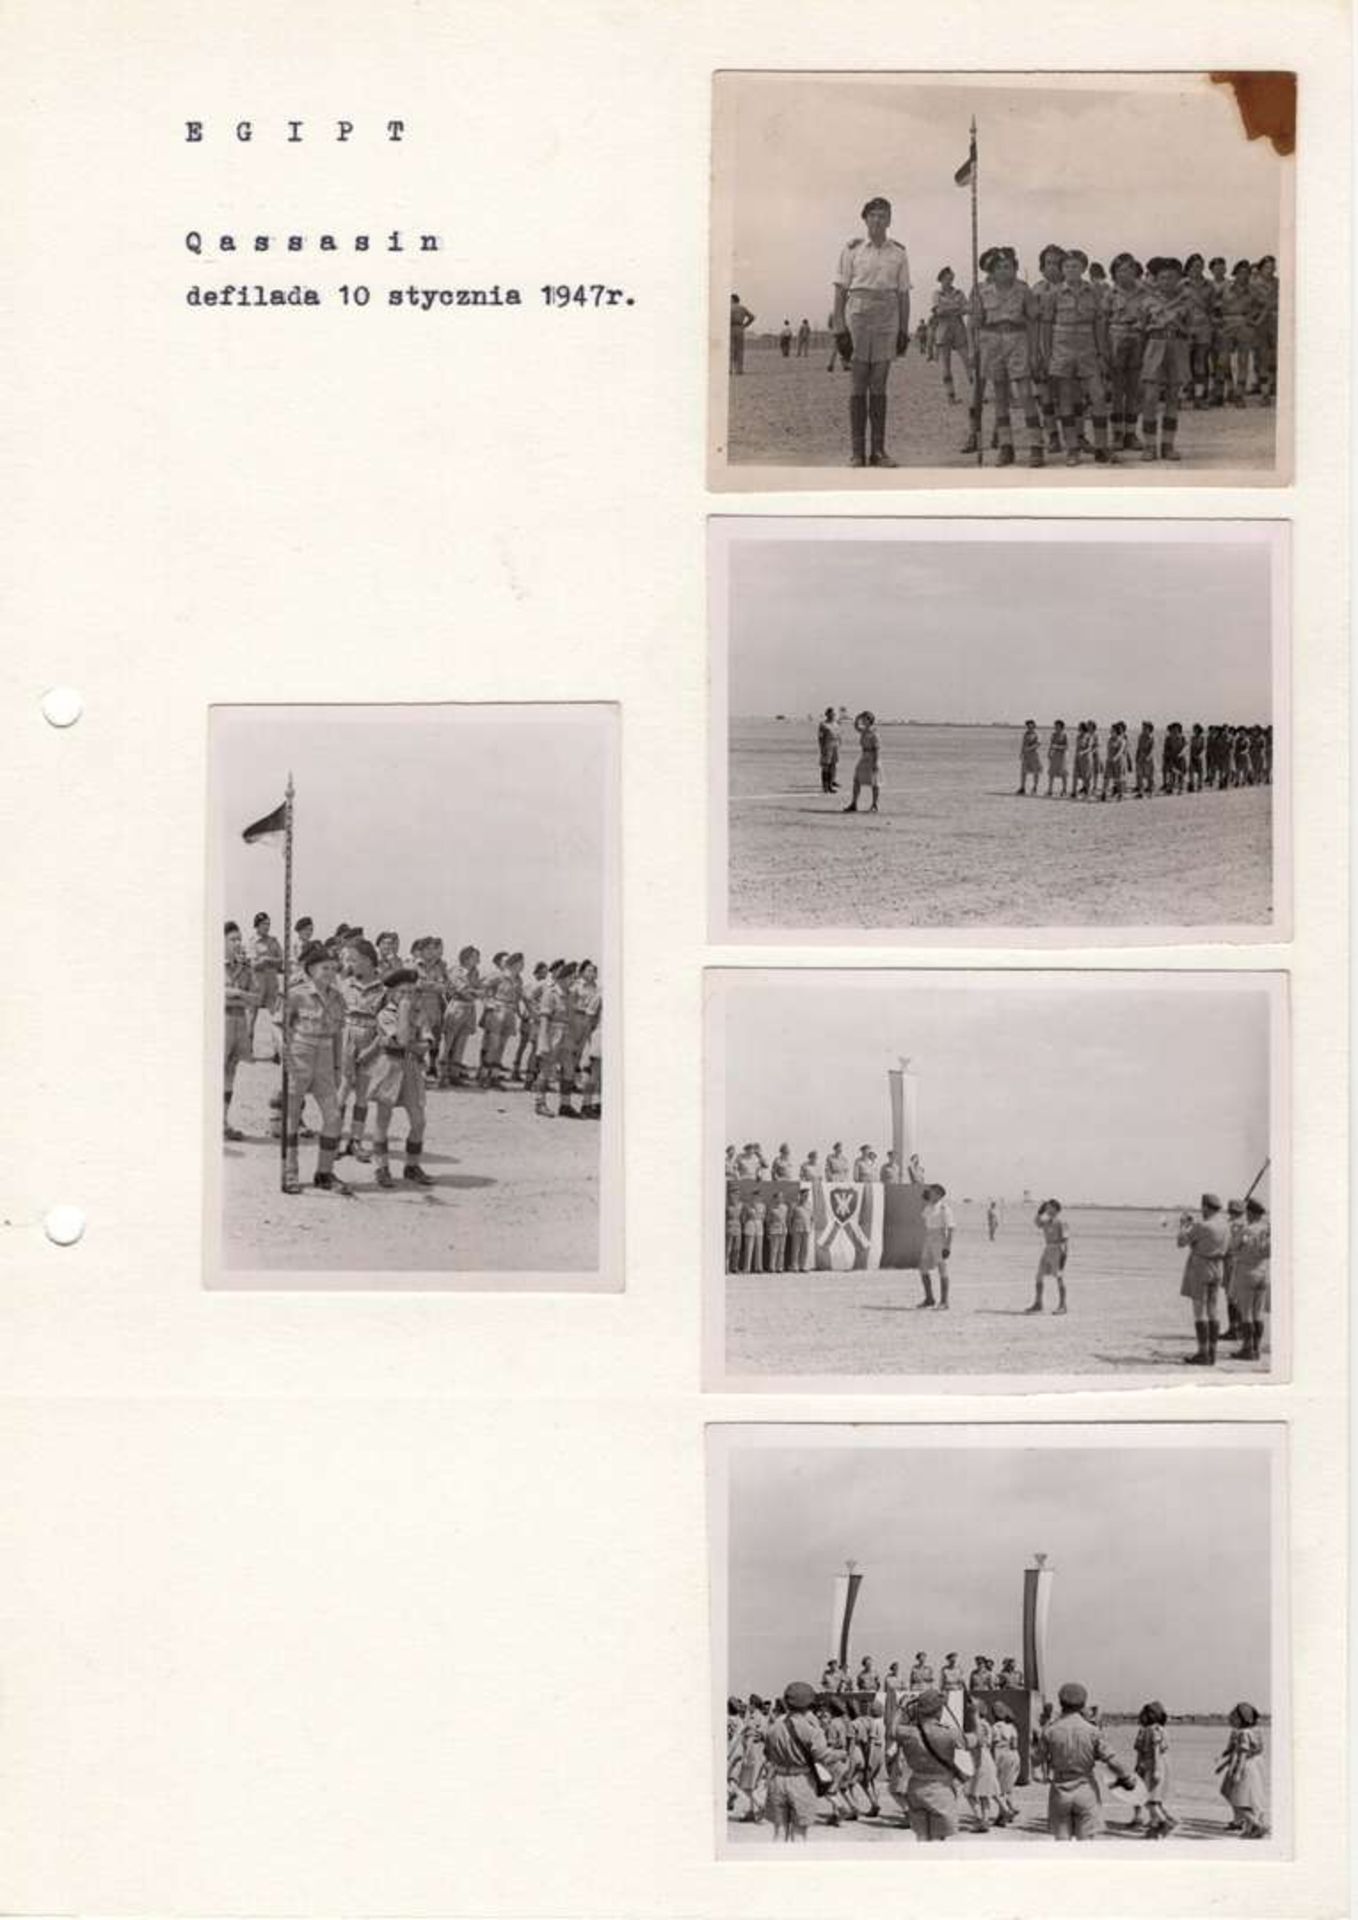 WW 2 Polish Photos from the parade in Qassasin, Egypt, January 10, 1947.